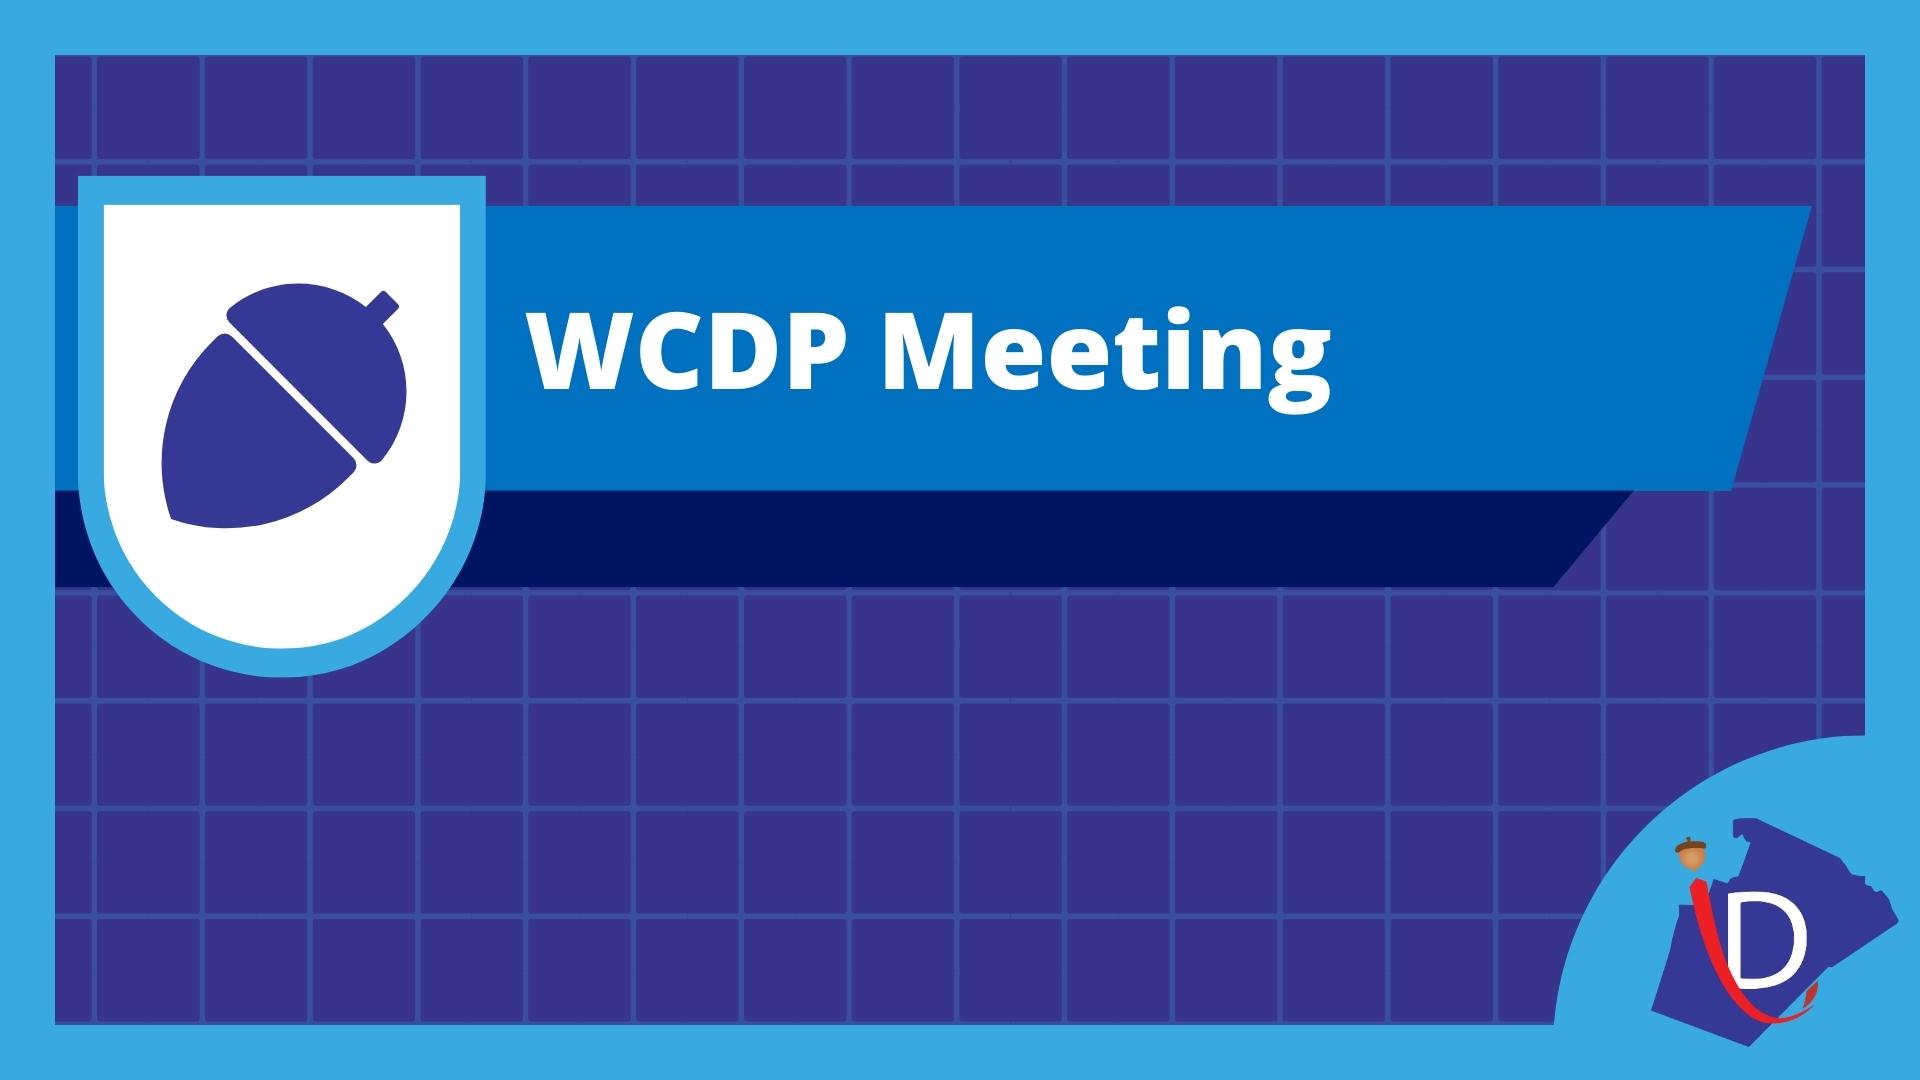 WCDP Meeting